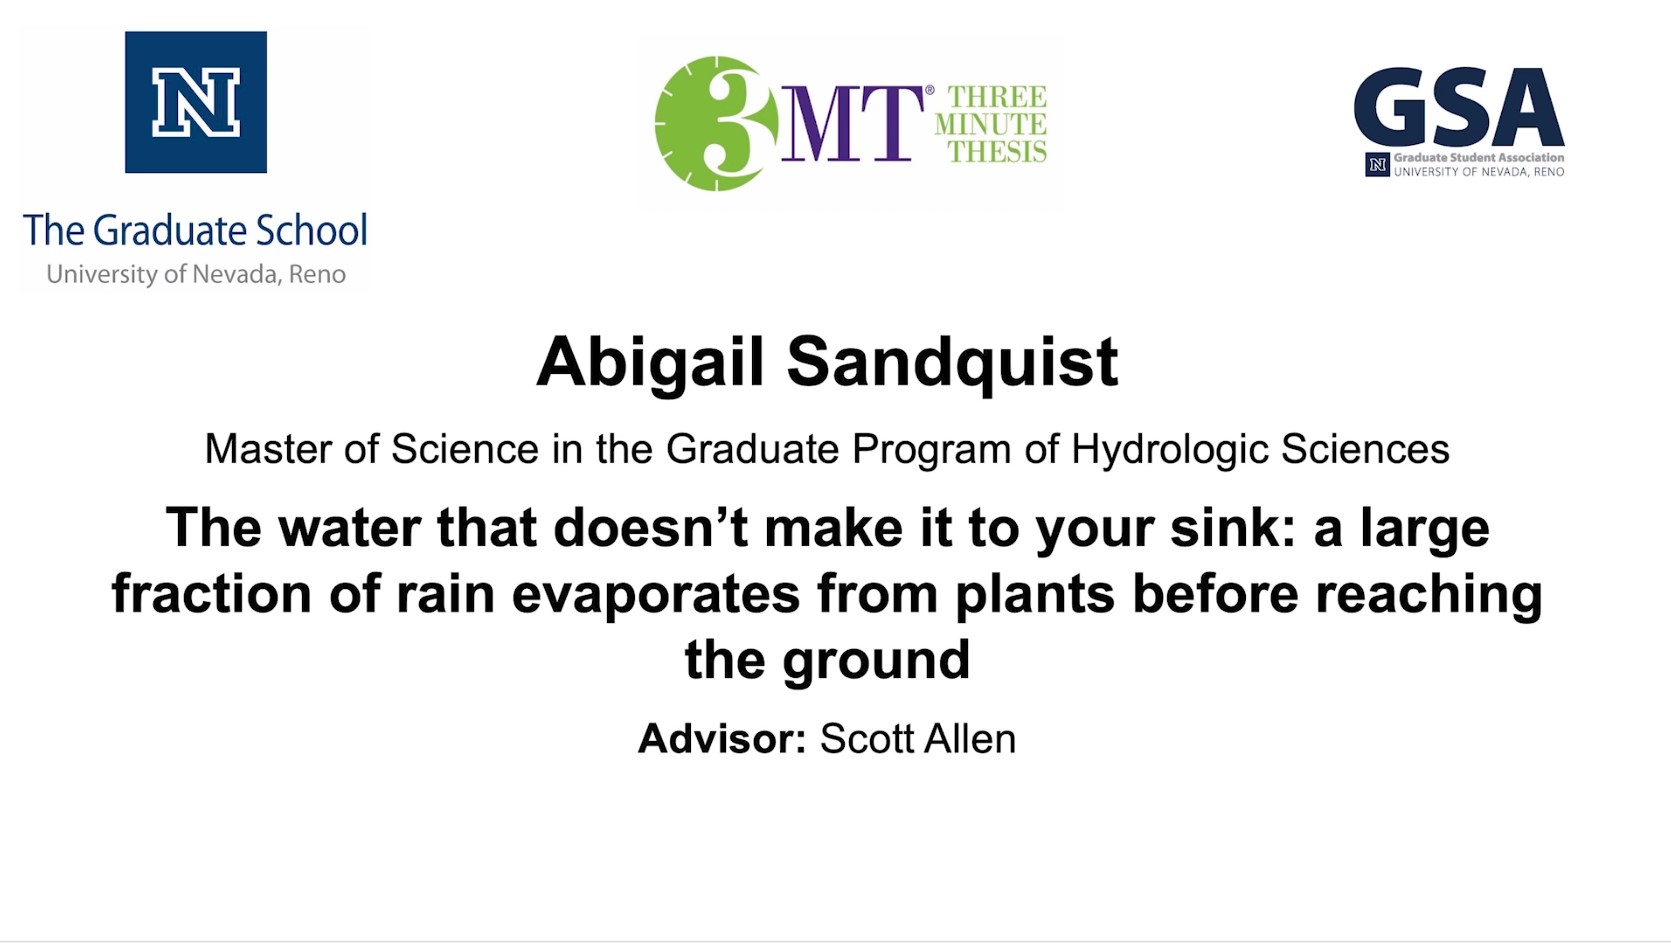 Thumbnail of Abigail Sandquist's title slide